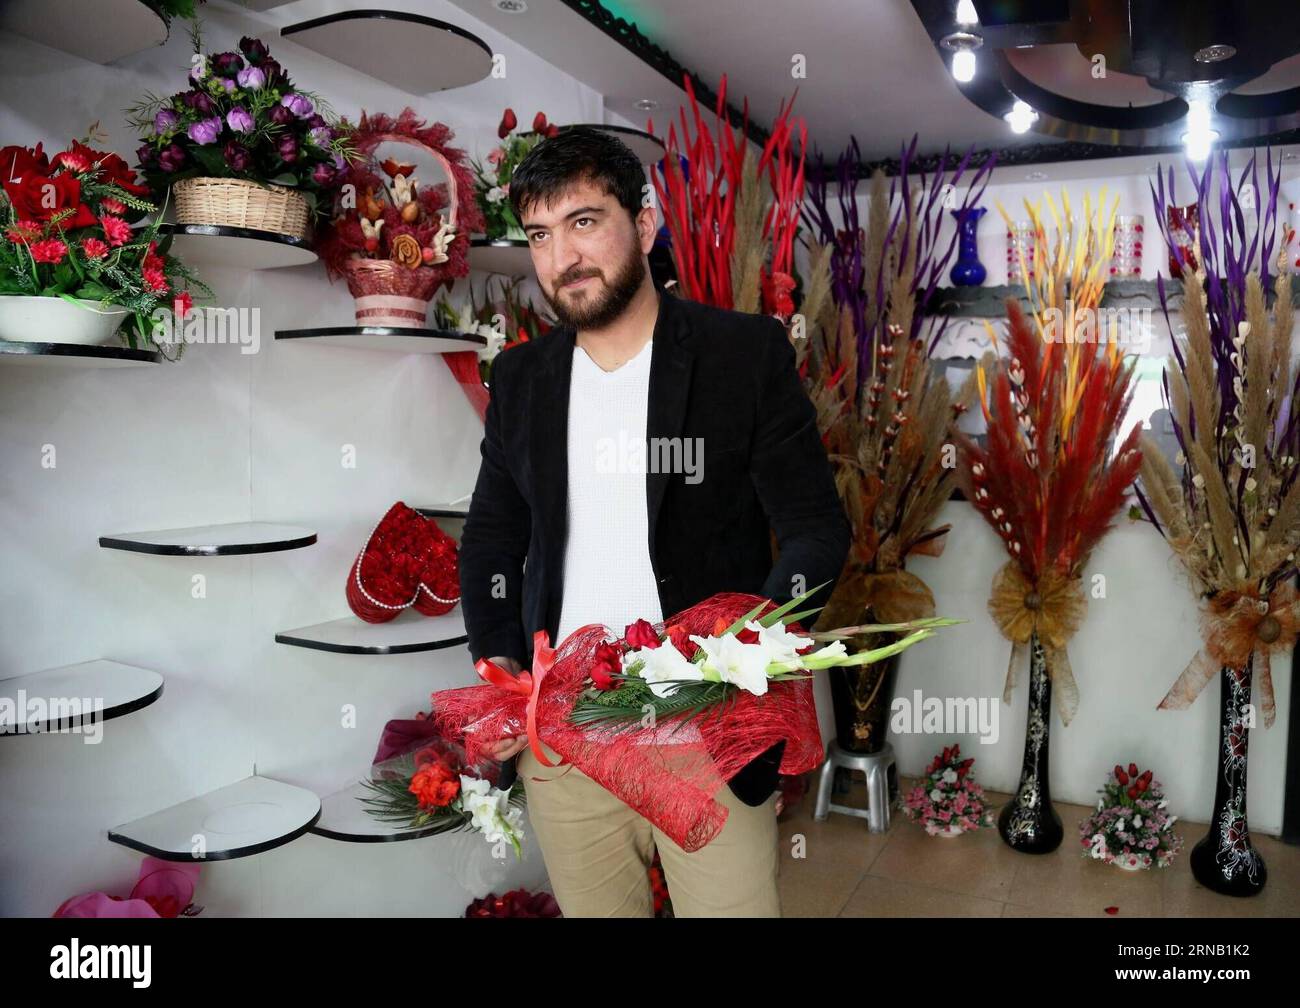 (160214) -- KABUL, 14. Februar 2016 -- ein Afghane kauft Blumen am Valentinstag in Kabul, Hauptstadt Afghanistans, 14. Februar 2016. Traditionell sind die meisten Afghanen dem Valentinstag nicht bewusst, aber einige Jugendliche feiern den Tag, indem sie Blumen an ihre Lieben schicken. ) (azp) AFGHANISTAN-KABUL-VALENTINE S DAY RahmatxAlizadah PUBLICATIONxNOTxINxCHN Kabul 14. Februar 2016 an Afghan man kauft Blumen AM Valentine S Day in Kabul Hauptstadt von Afghanistan 14. Februar 2016 traditionell kennen die meisten Afghanen den Valentine S Day nicht, jedoch feiern einige Jugendliche den Tag, indem sie Blumen an die schicken Stockfoto